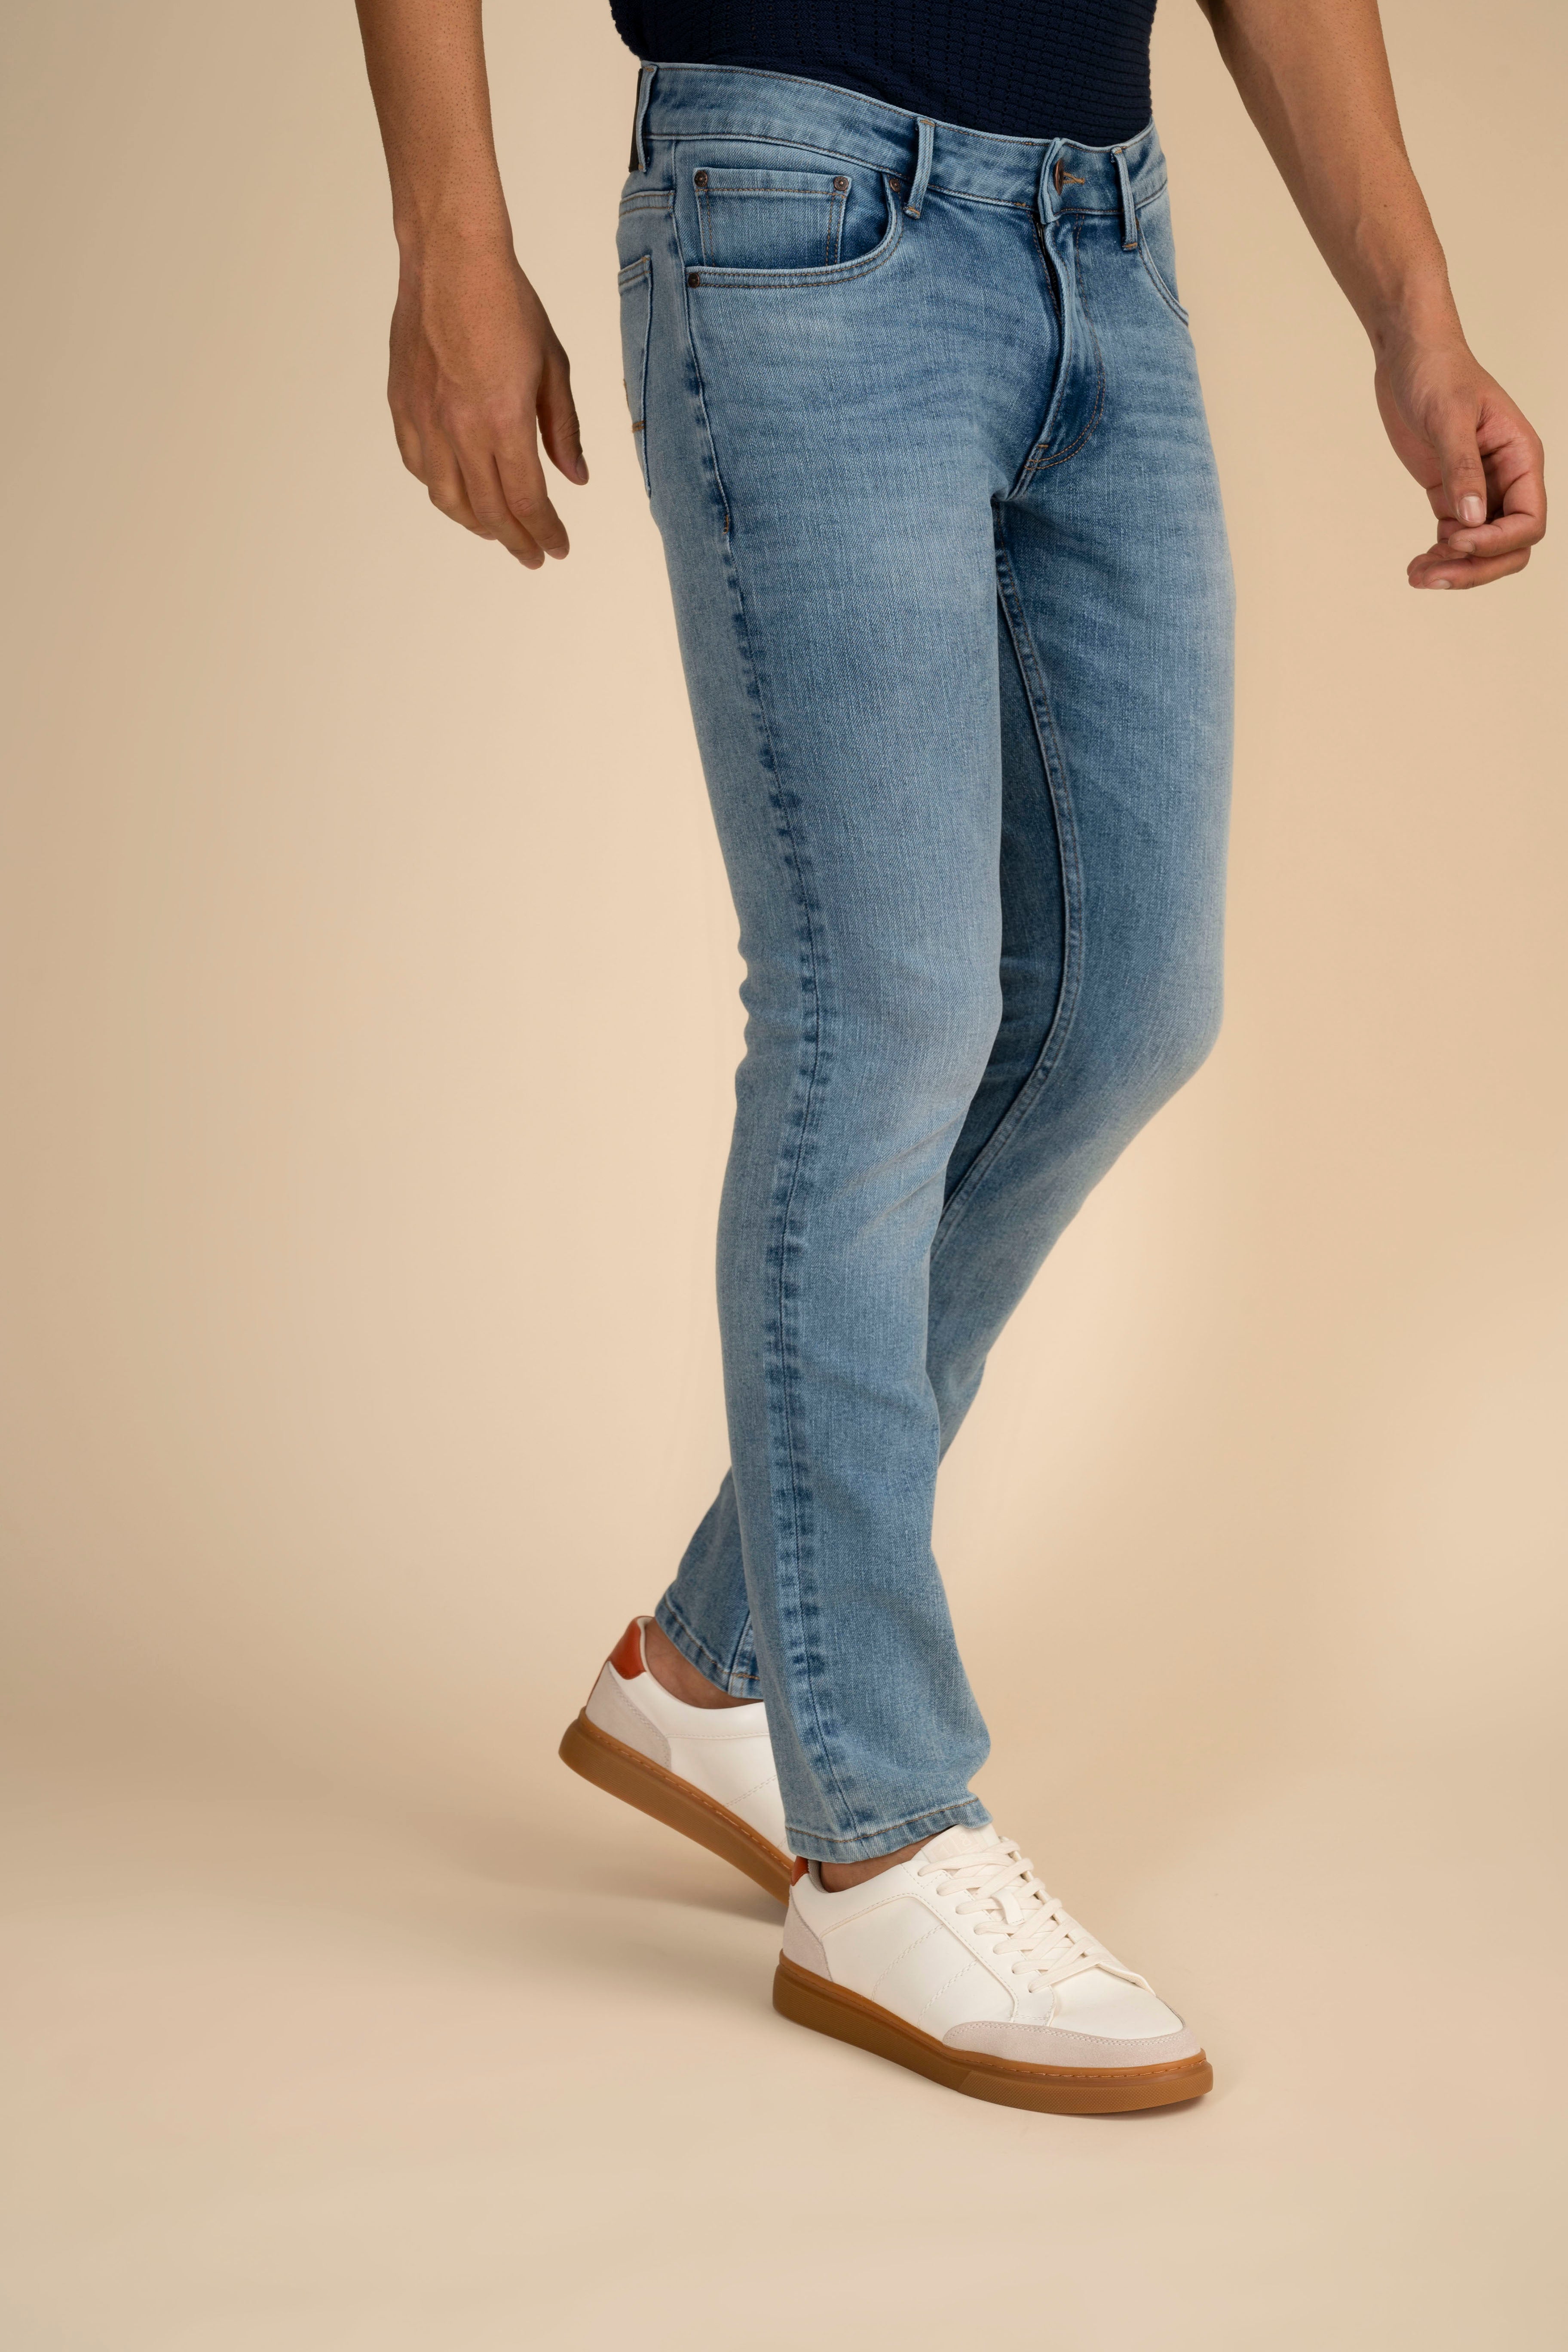 Iconic Indigo Jeans